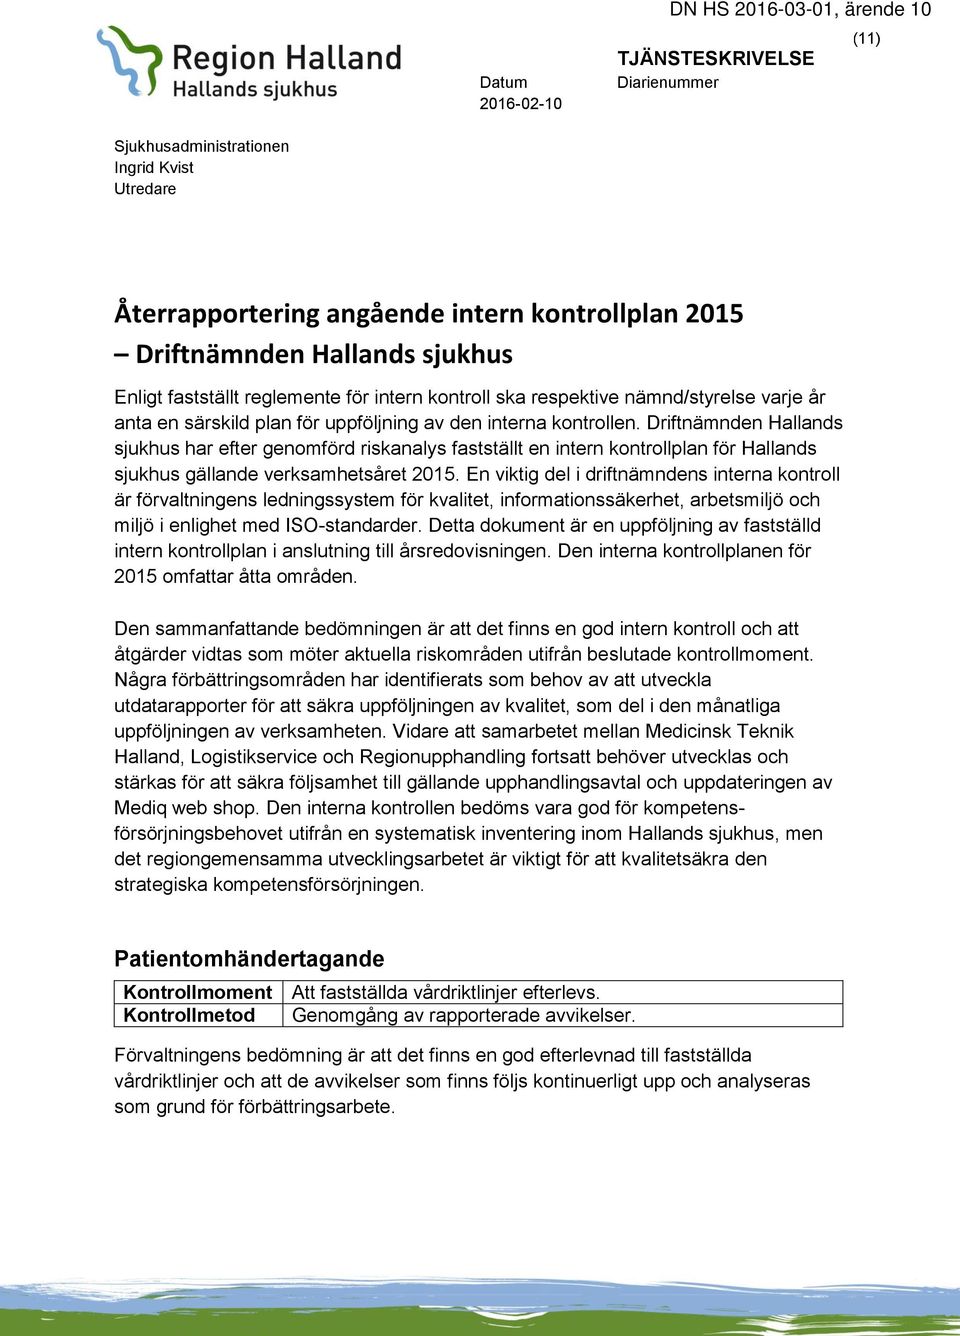 Driftnämnden Hallands sjukhus har efter genomförd riskanalys fastställt en intern kontrollplan för Hallands sjukhus gällande verksamhetsåret 2015.